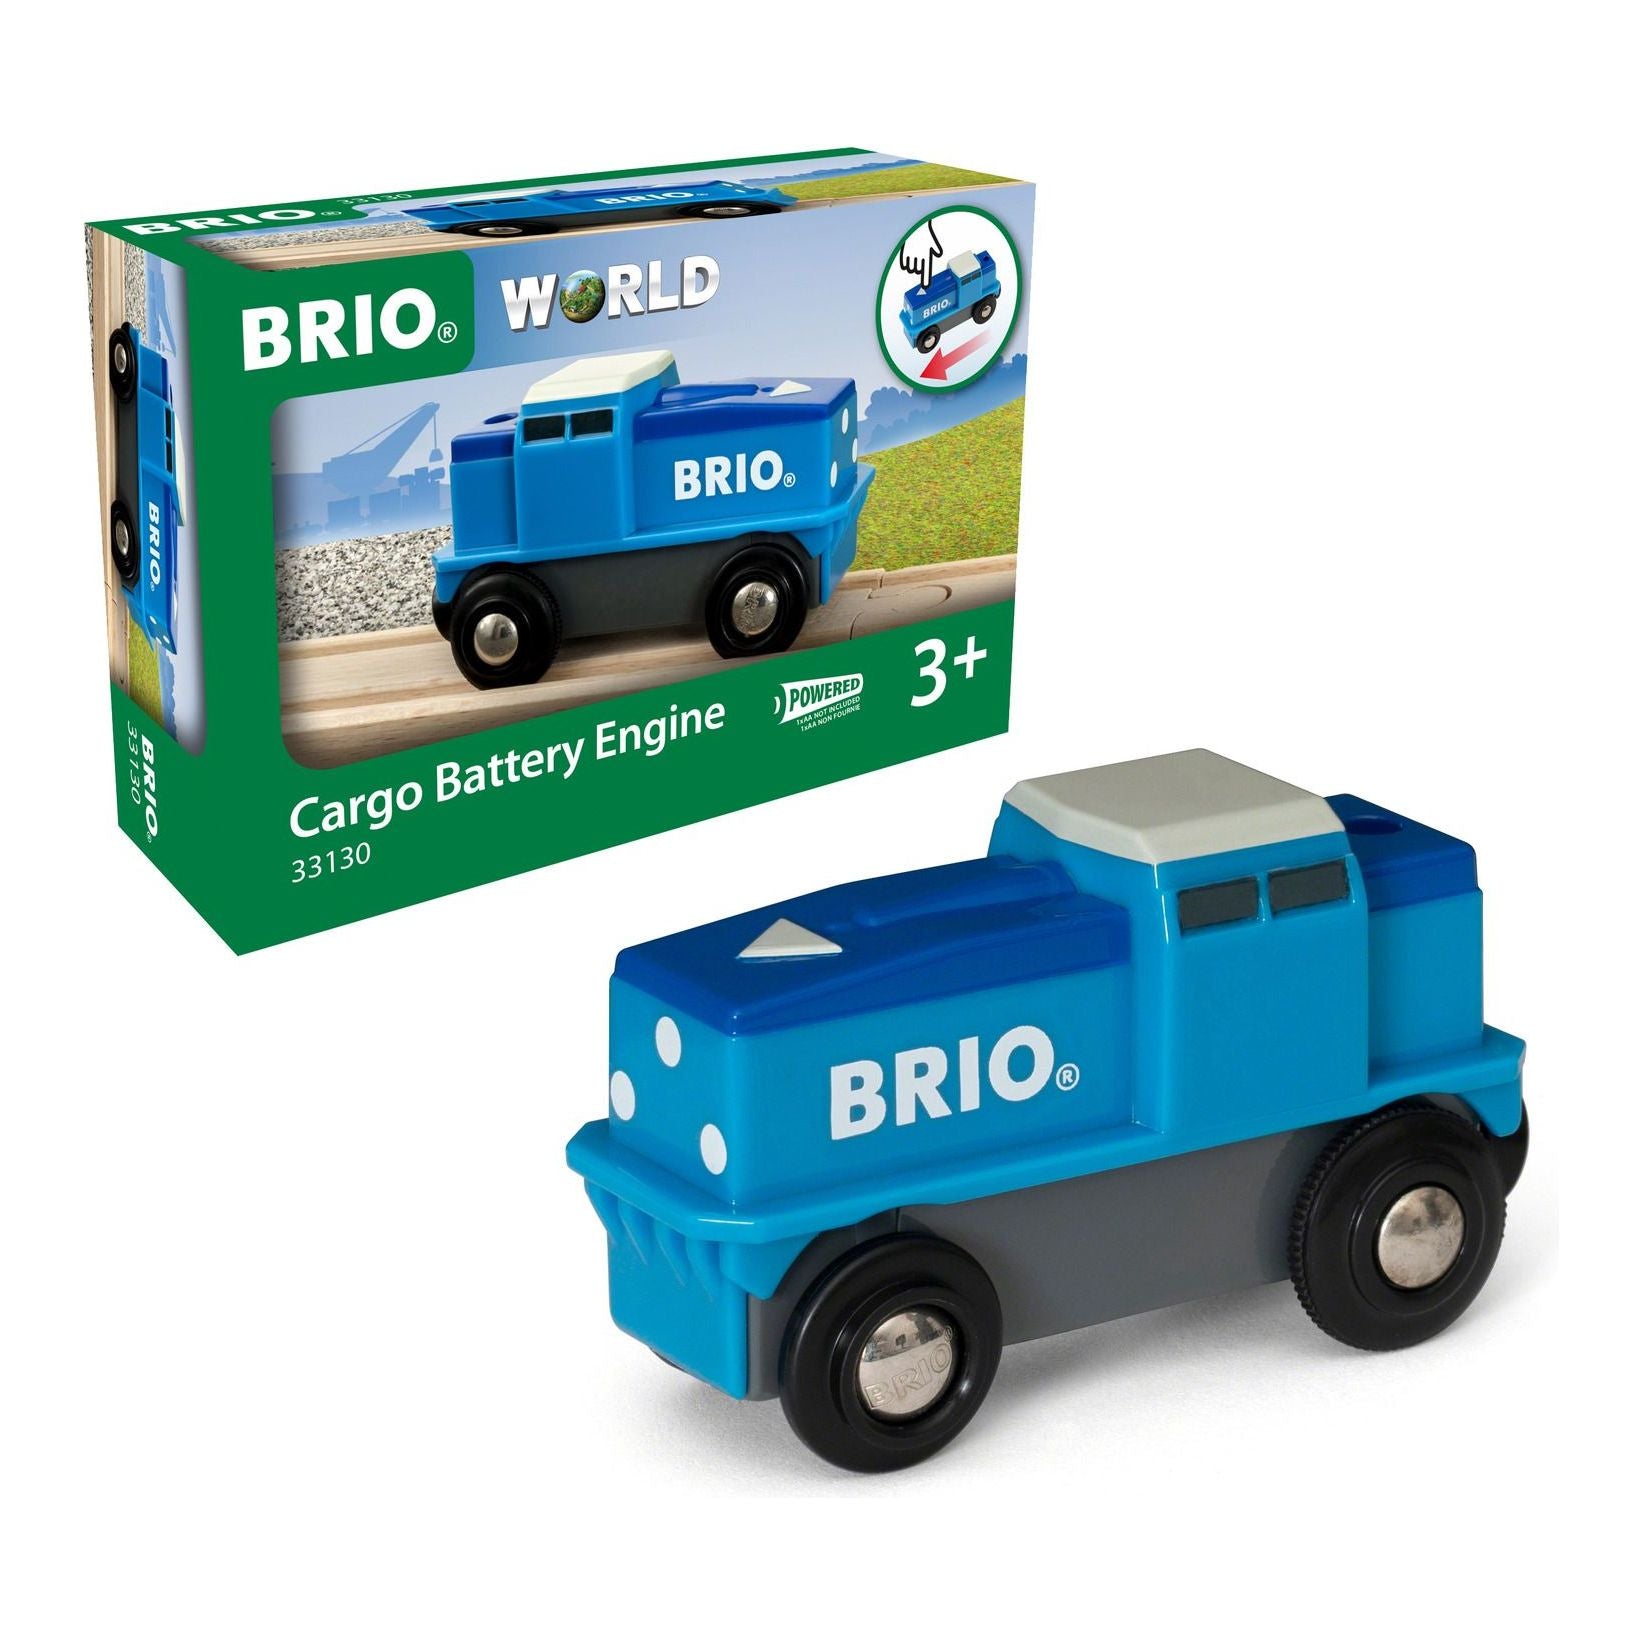 Brio Cargo Battery Engine BRIO